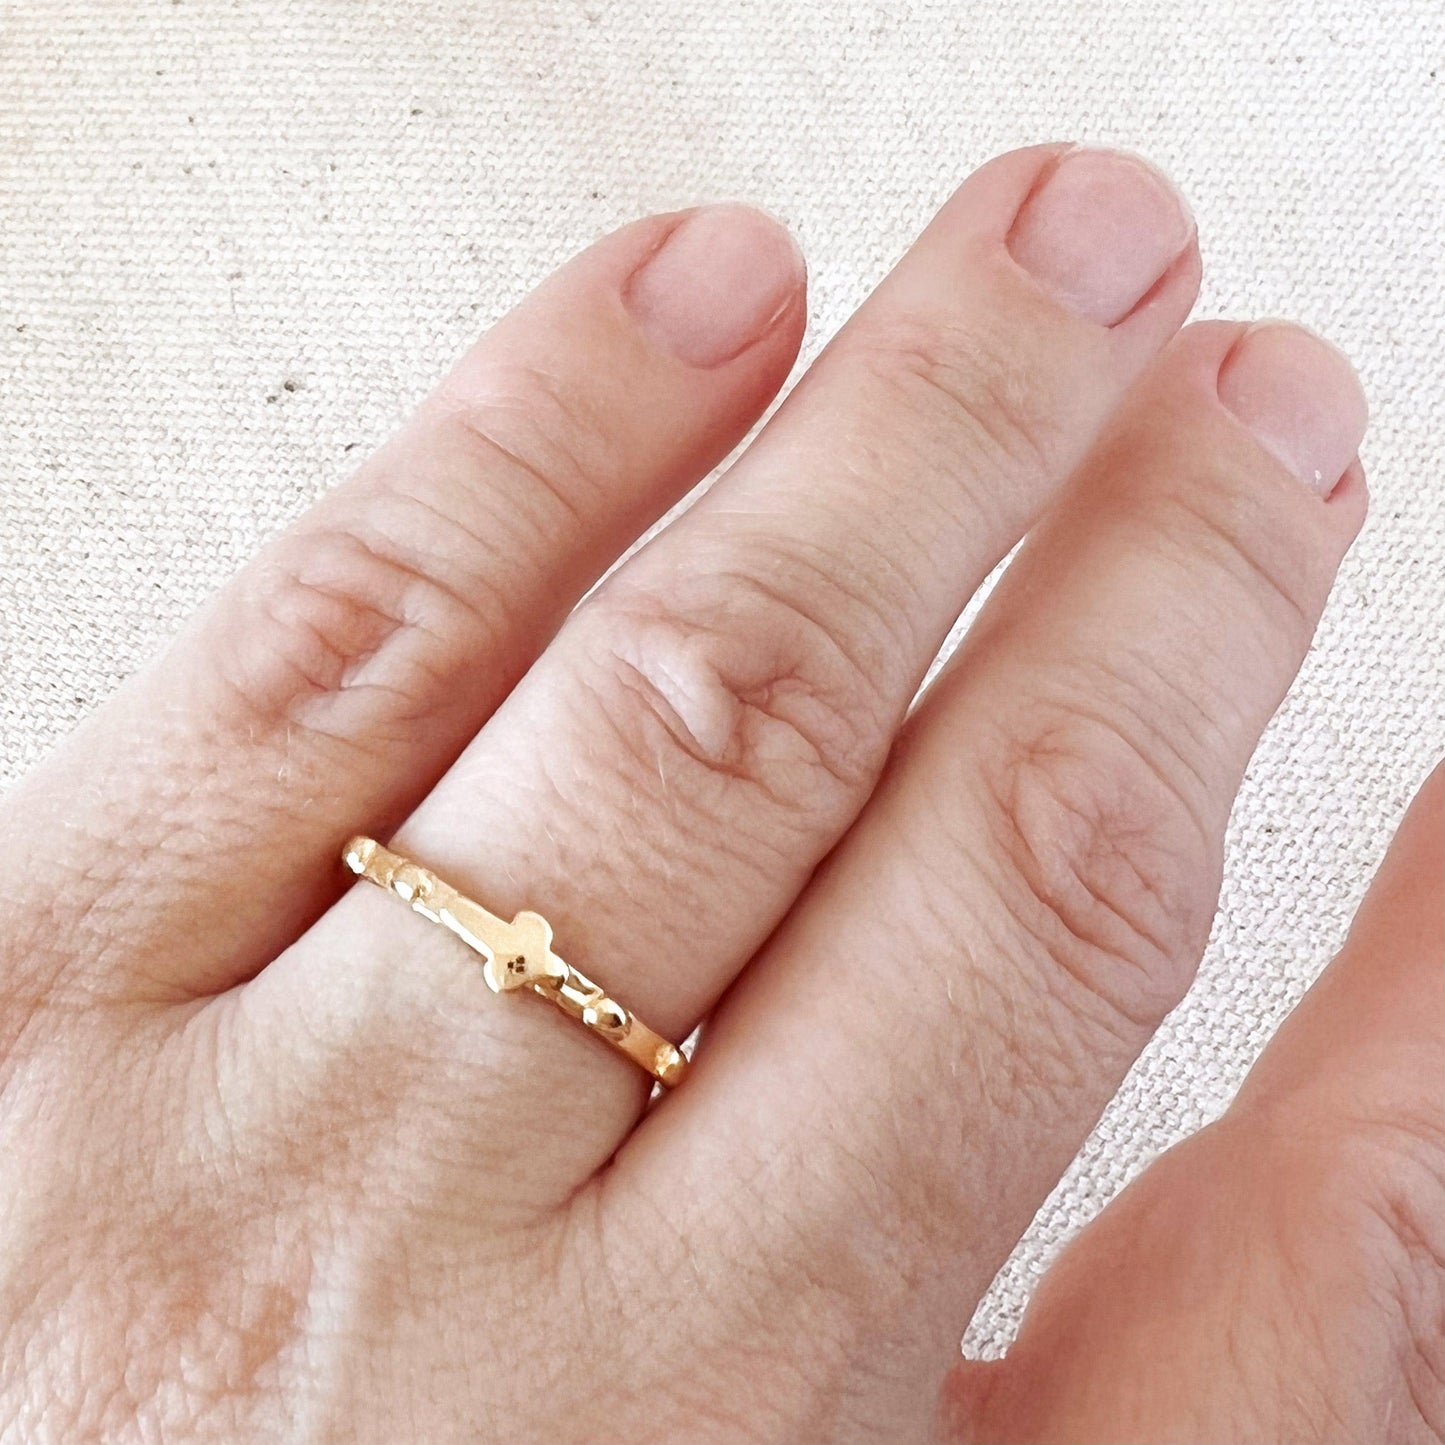 GoldFi 18k Gold Filled Rosary Prayer Ring